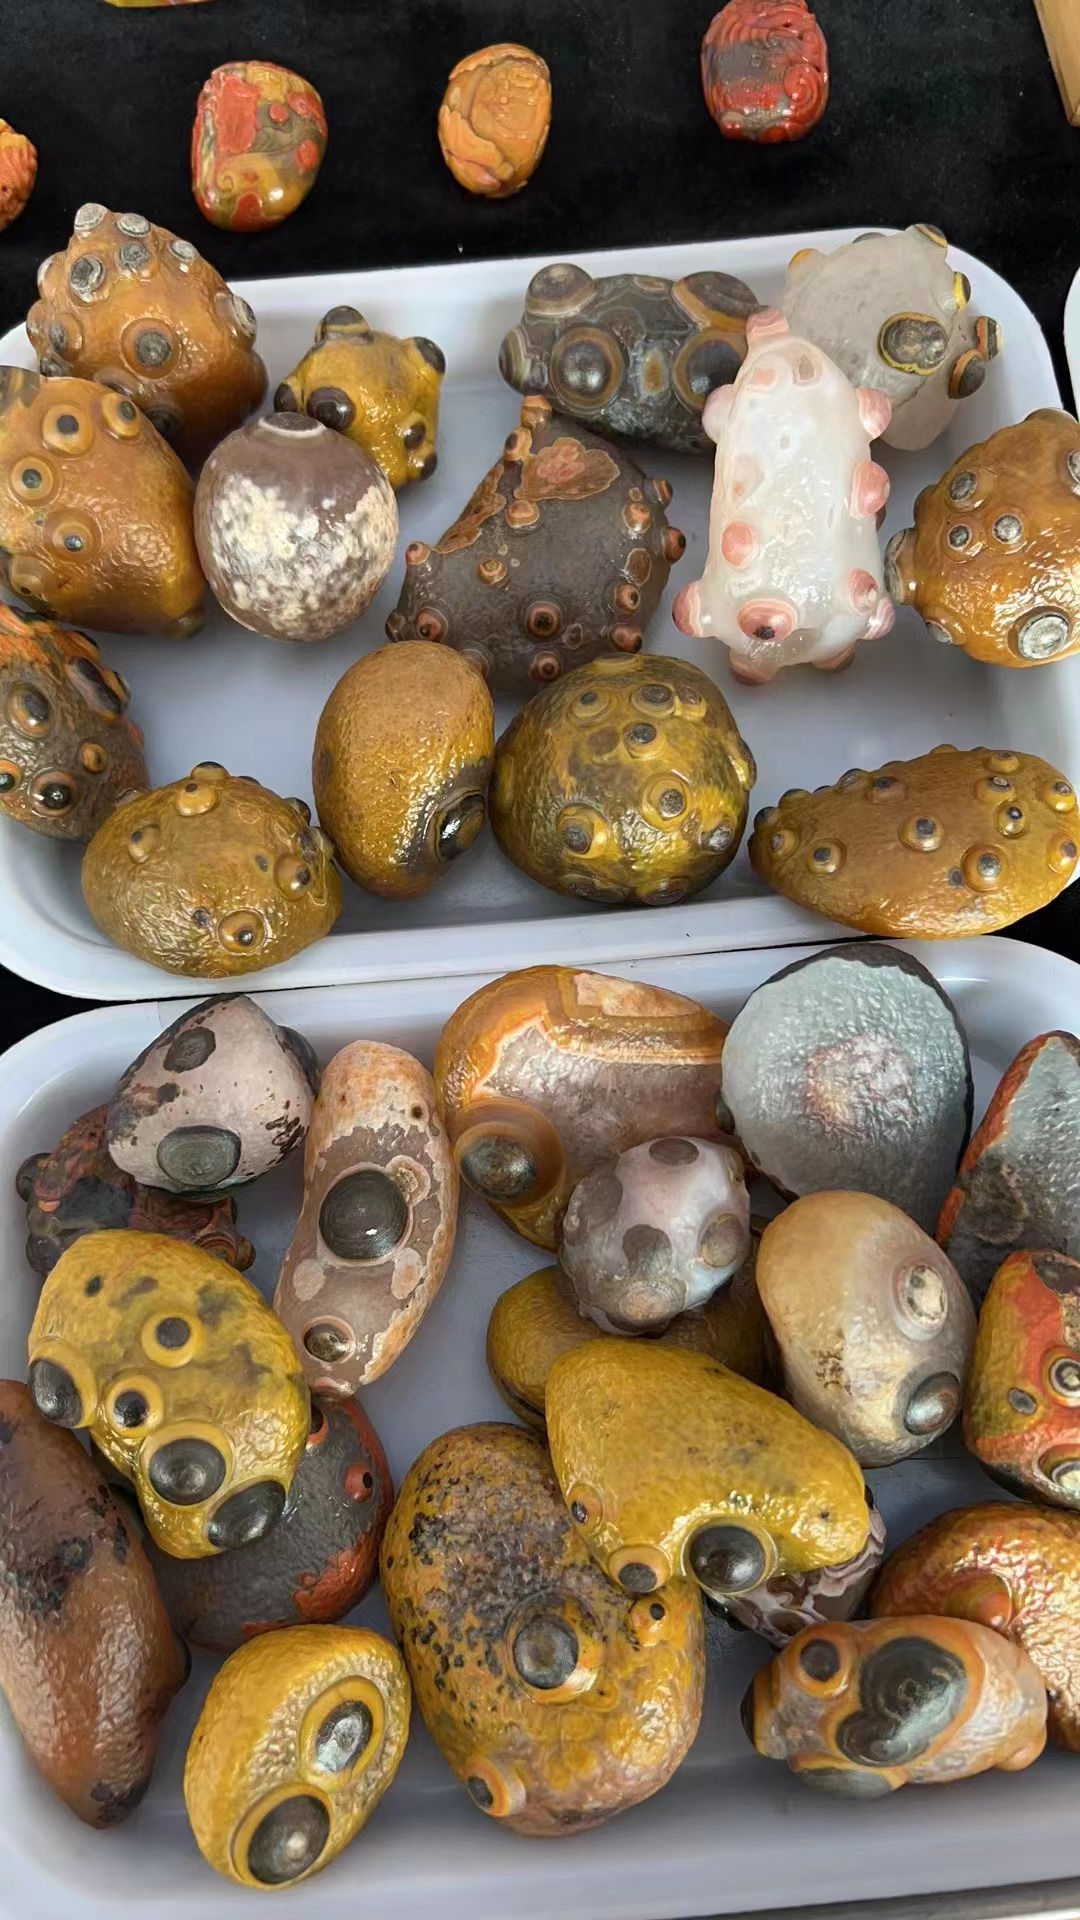 战国红玛瑙眼睛石造型画面石阿拉善戈壁玛瑙浮雕奇石摆件收藏茶宠